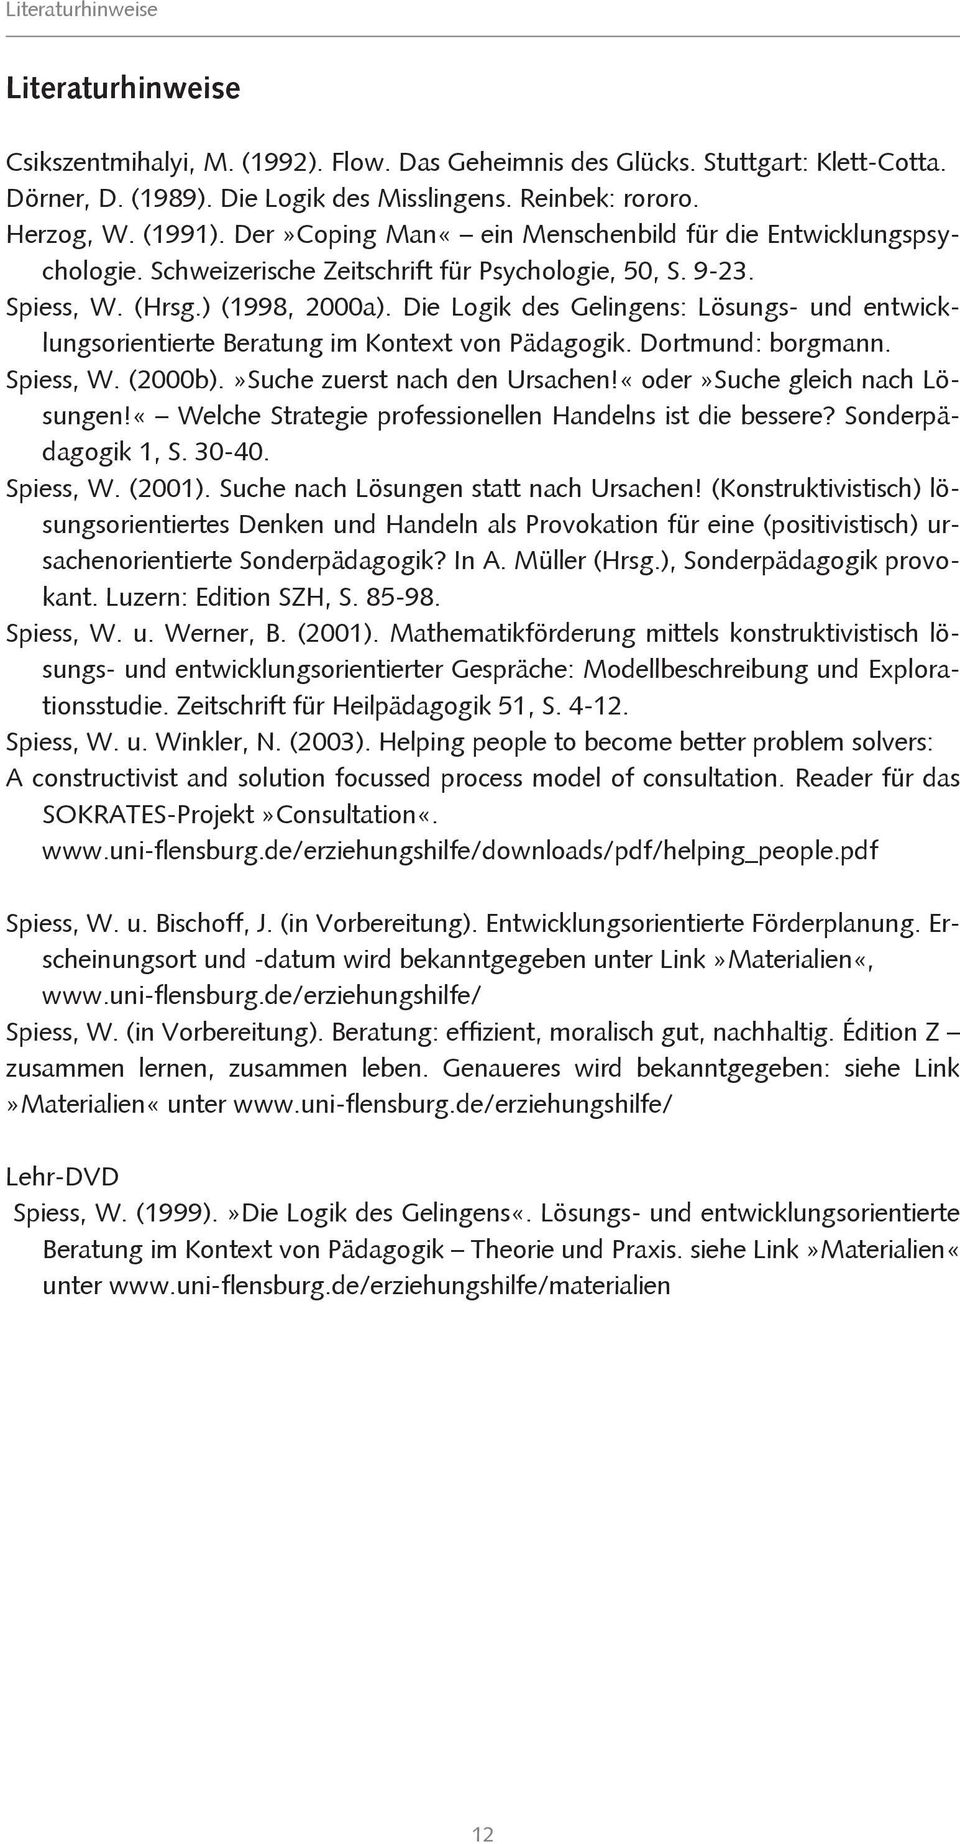 Die Logik des Gelingens: Lösungs- und entwicklungsorientierte Beratung im Kontext von Pädagogik. Dortmund: borgmann. Spiess, W. (2000b).»Suche zuerst nach den Ursachen!